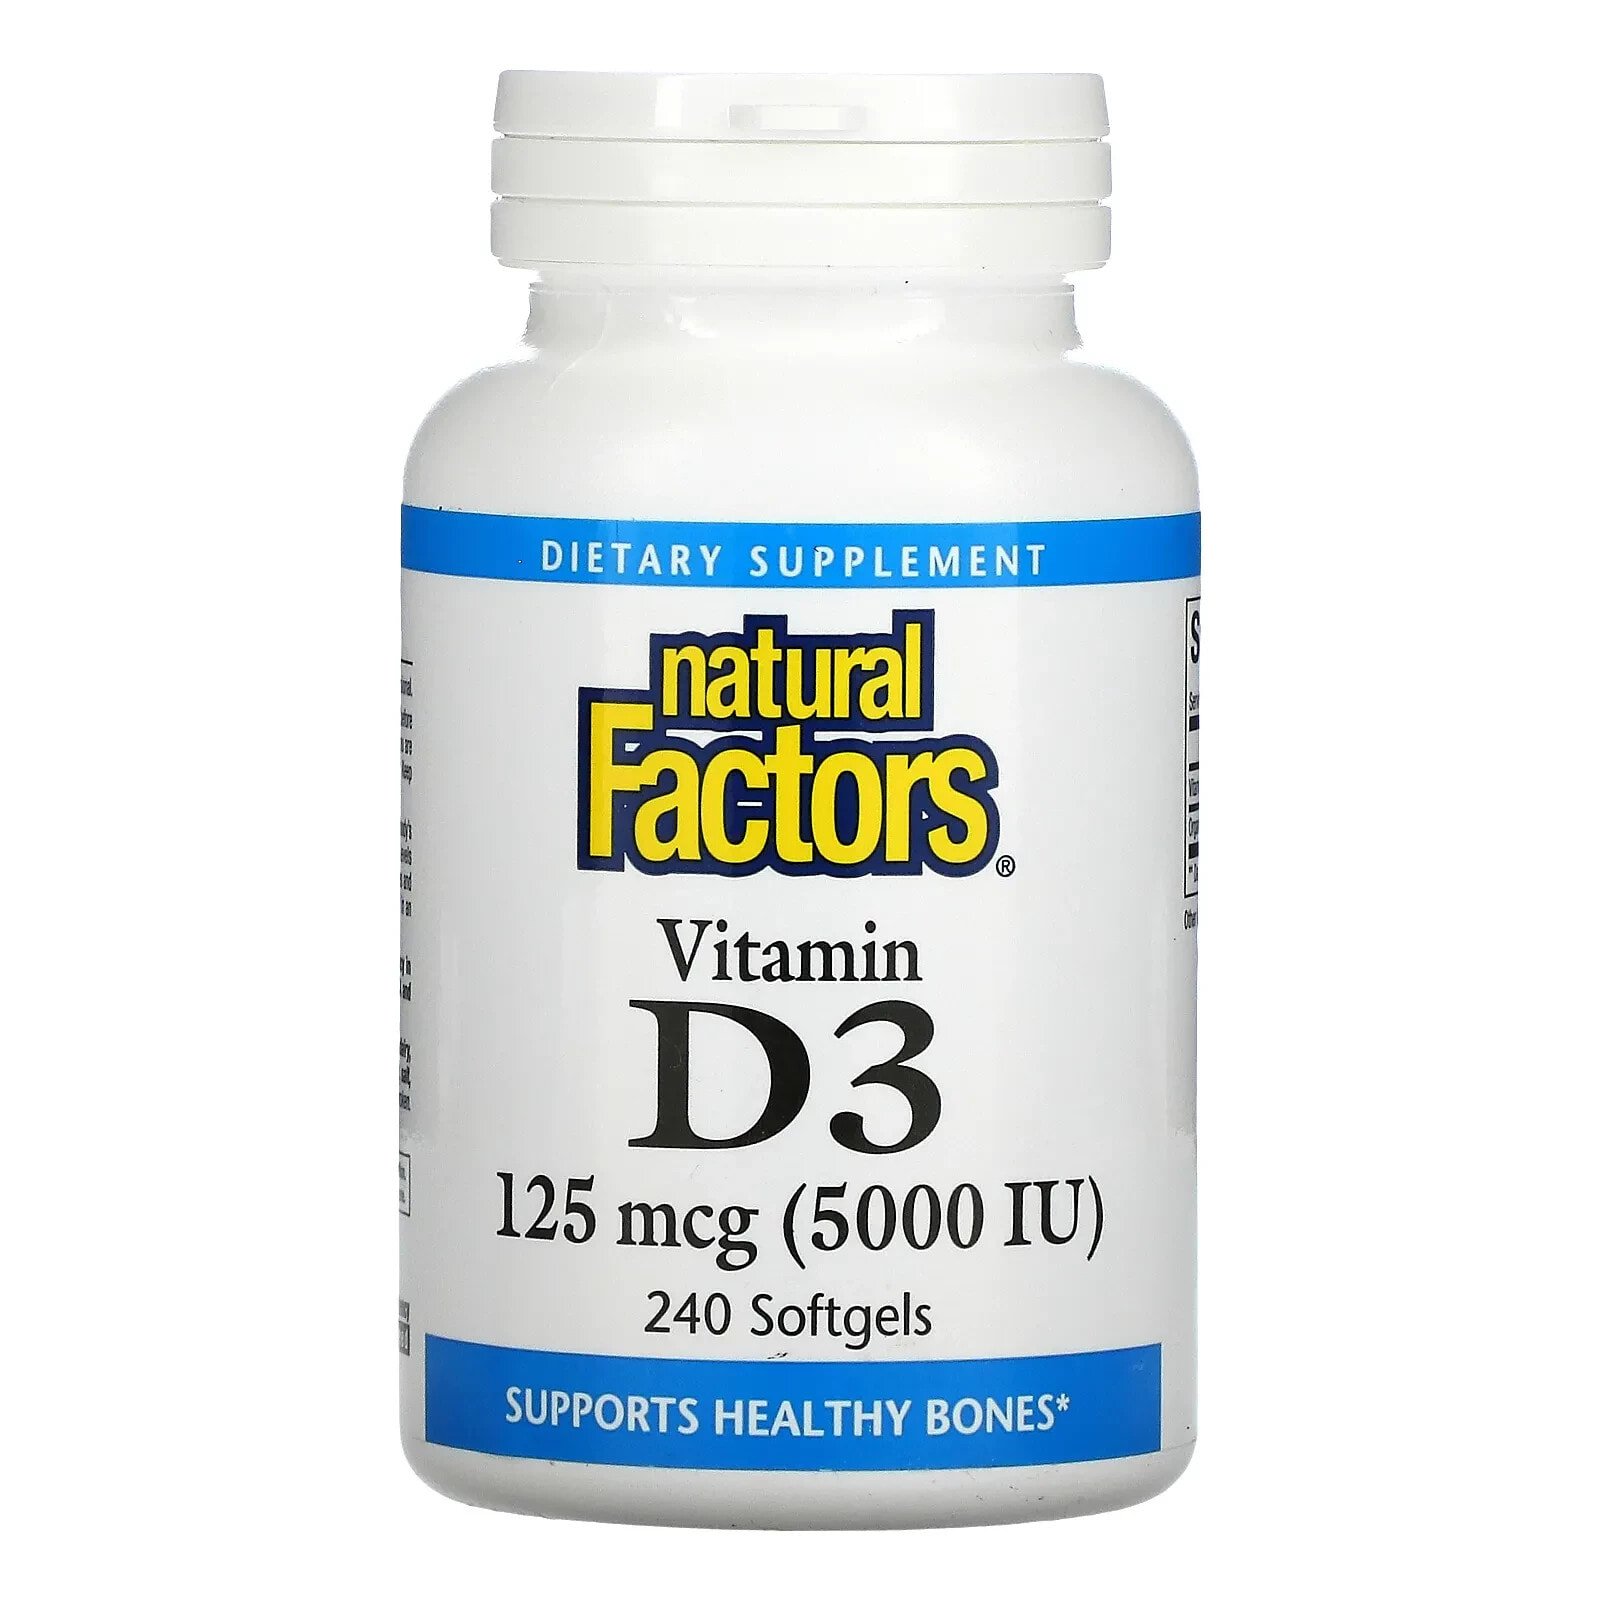 Vitamin D3, 50 mcg (2,000 IU), 120 Softgels